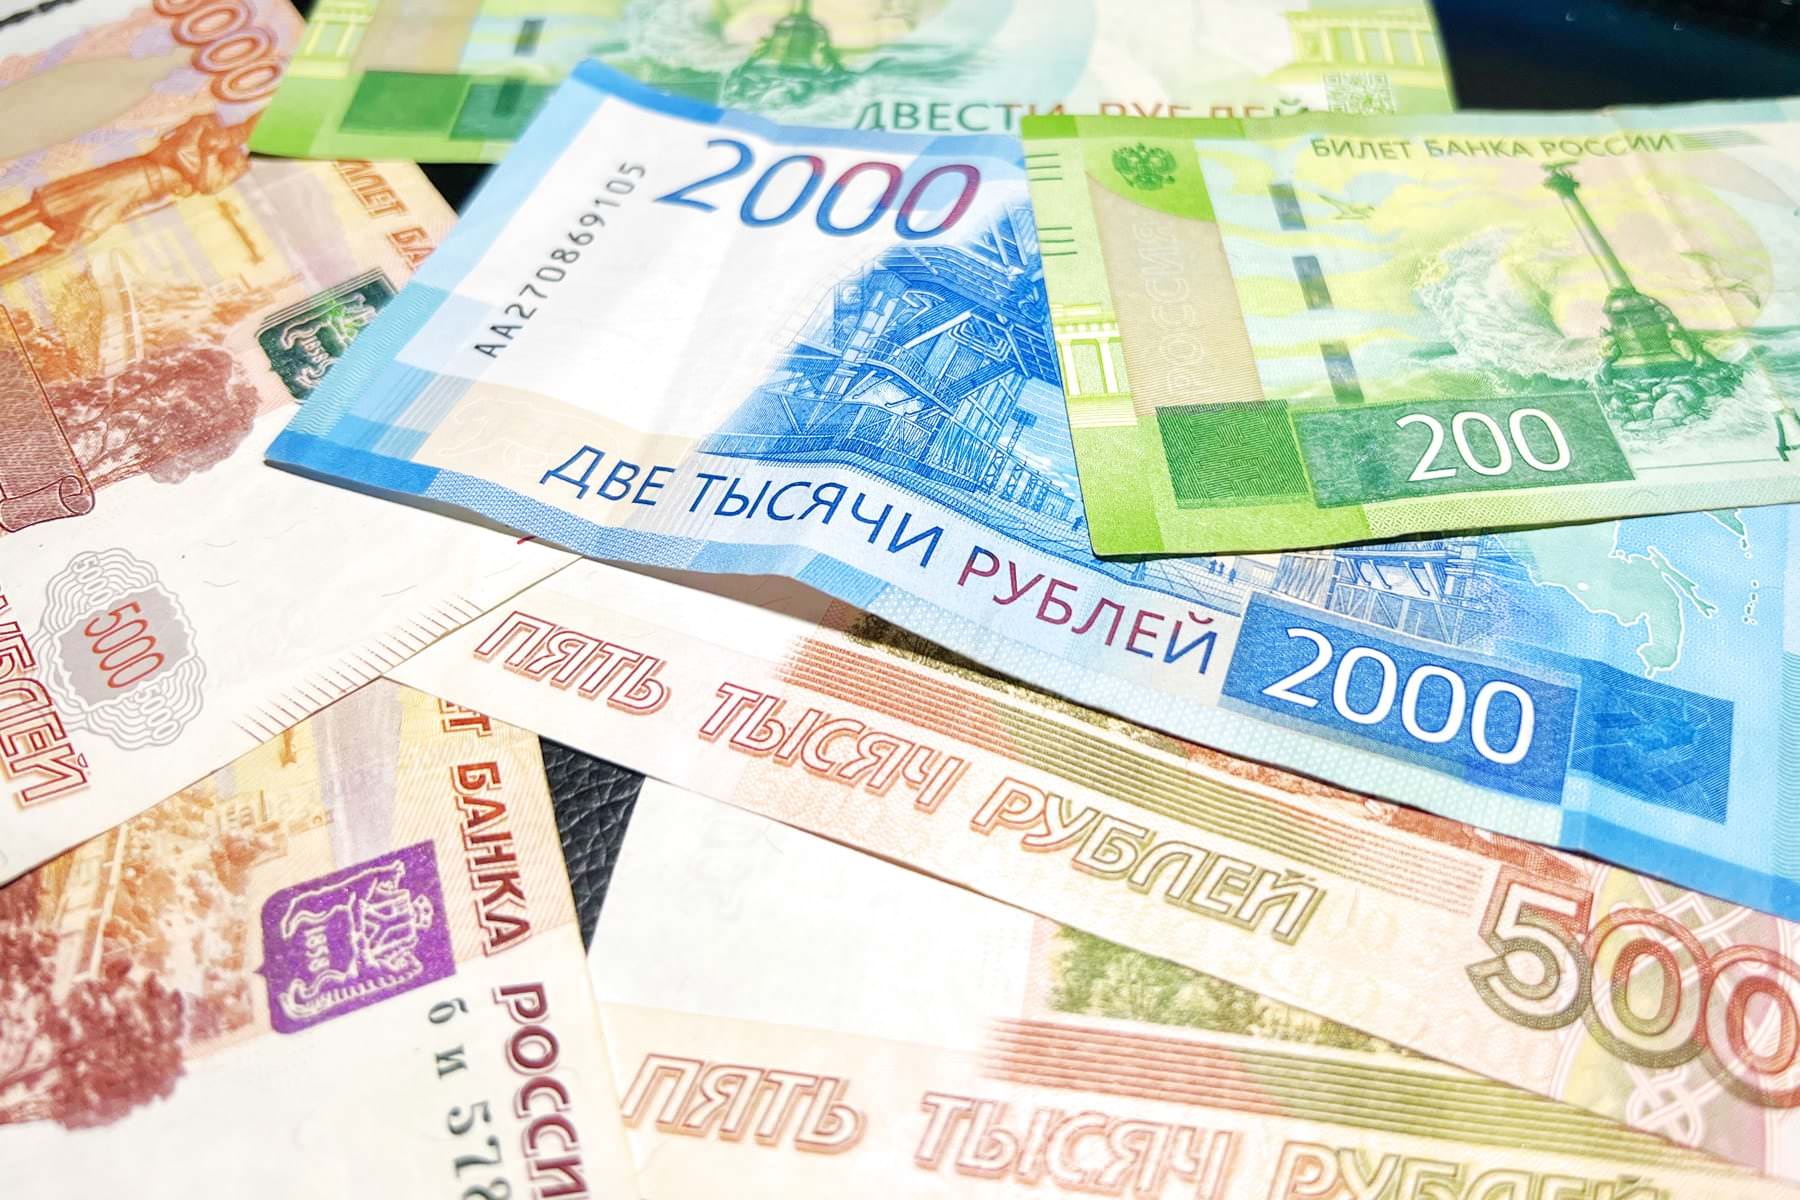 Впервые за 25 лет. Новая денежная реформа изменит жизнь абсолютно всех россиян